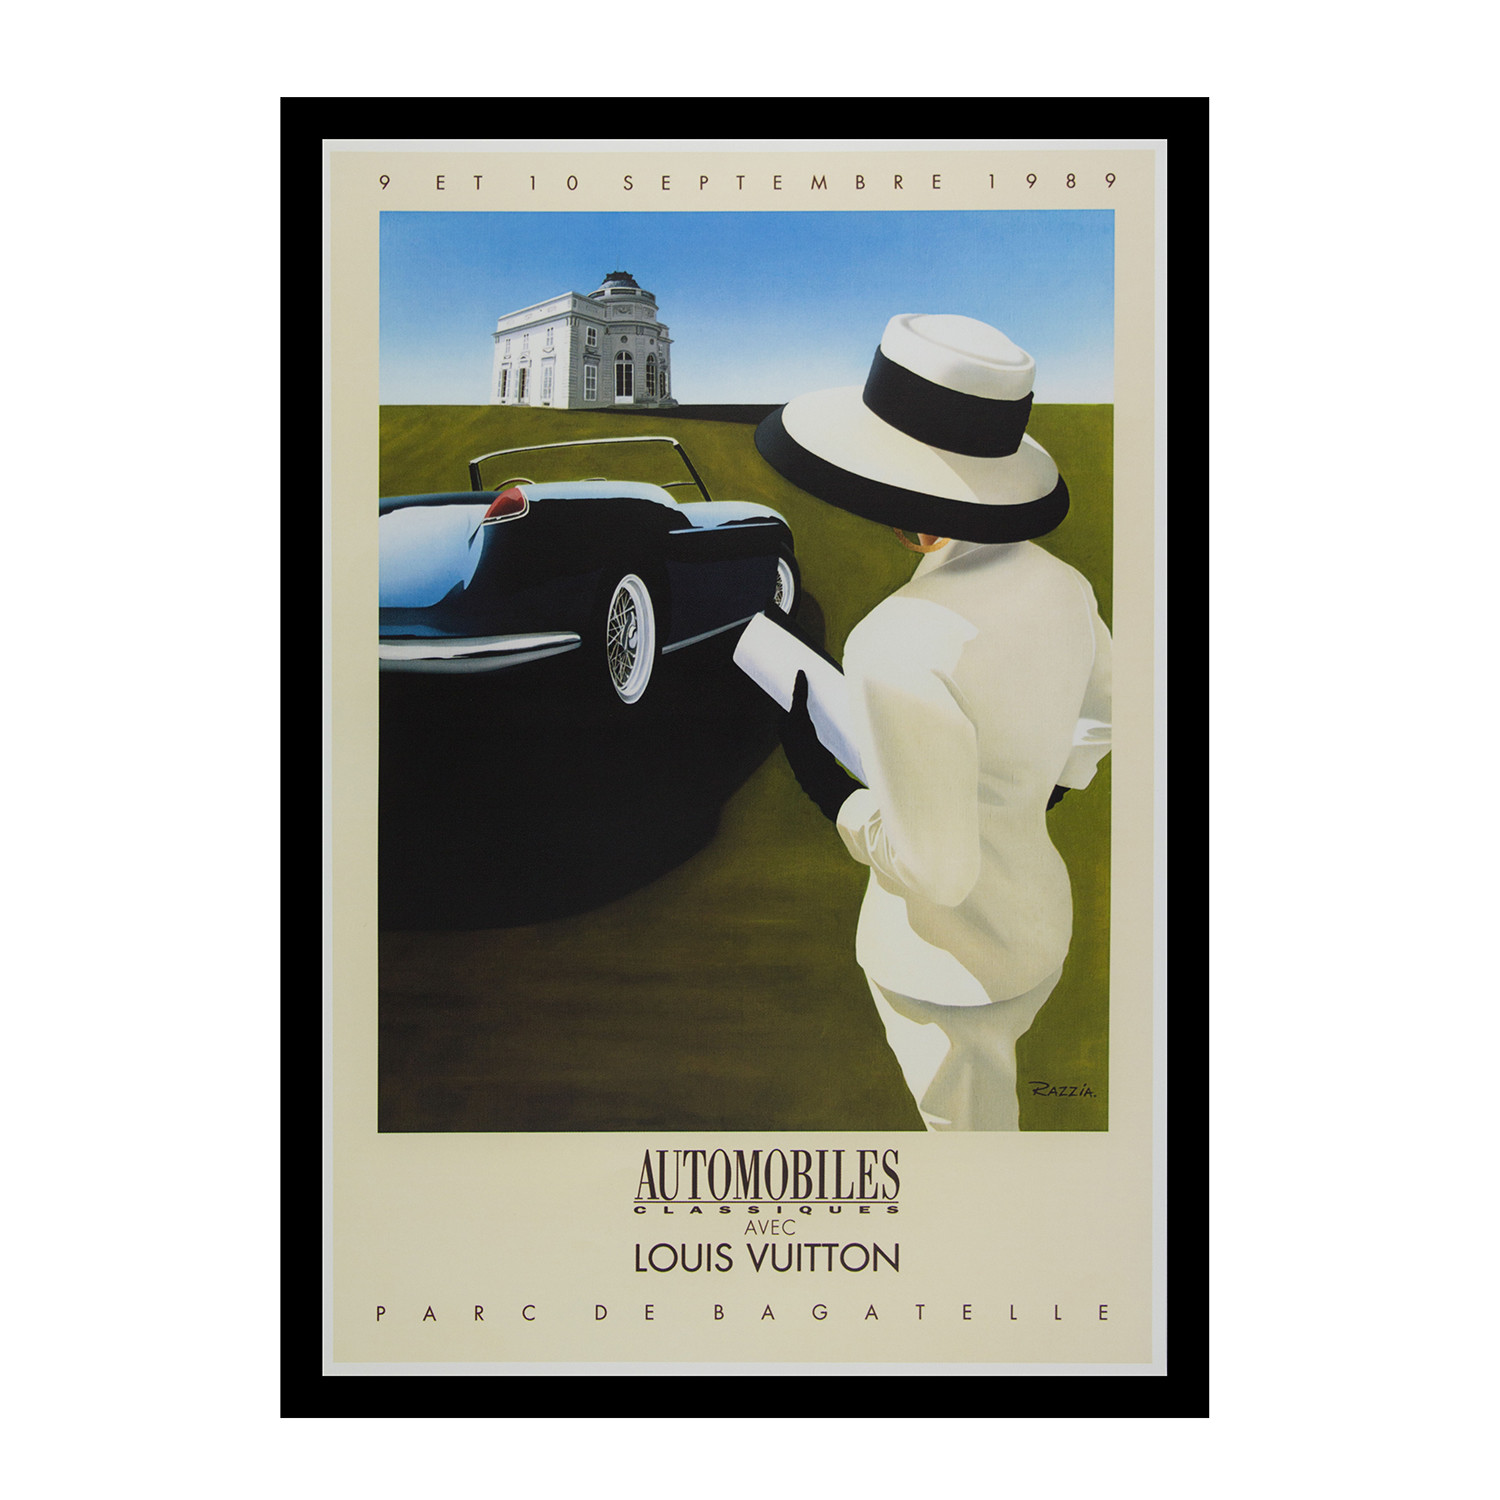 Automobiles Classiques avec Louis Vuitton, Parc de Bagatelle Vintage  Poster